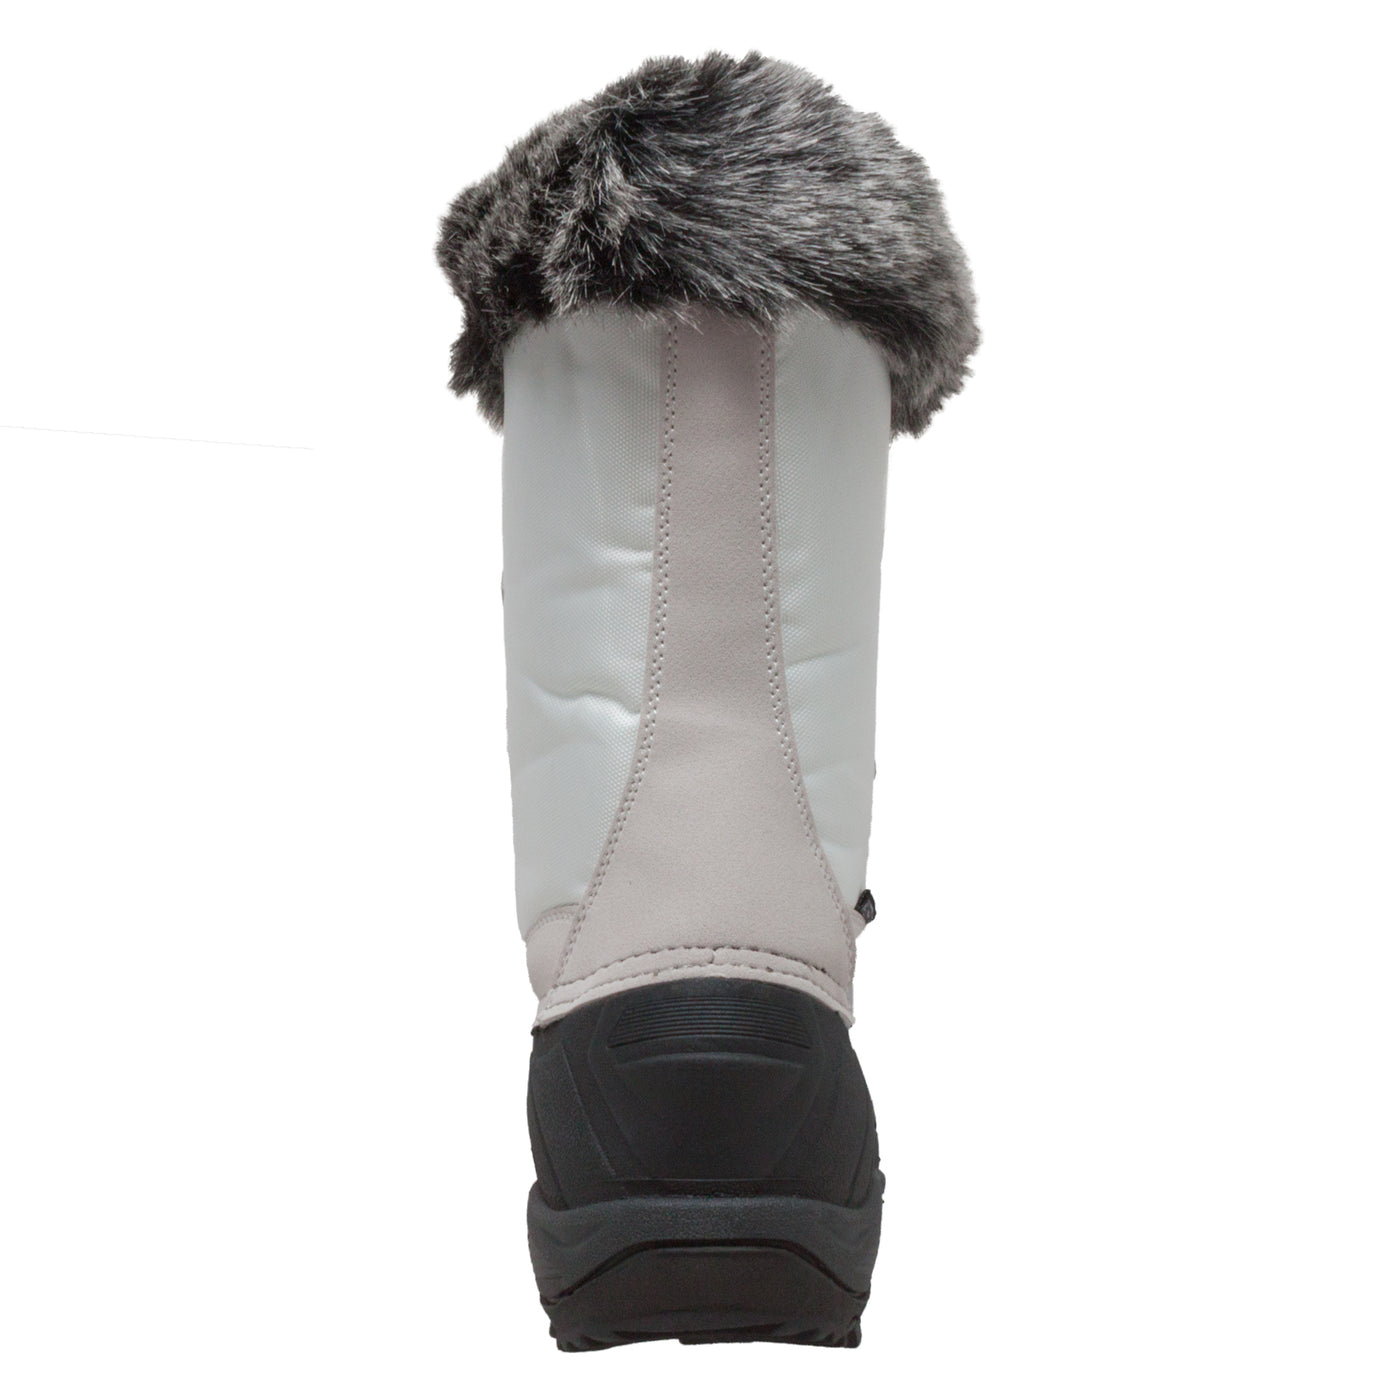 Women's Nylon Winter Boots White - 8780-WT - Shop Genuine Leather men & women's boots online | AdTecFootWear